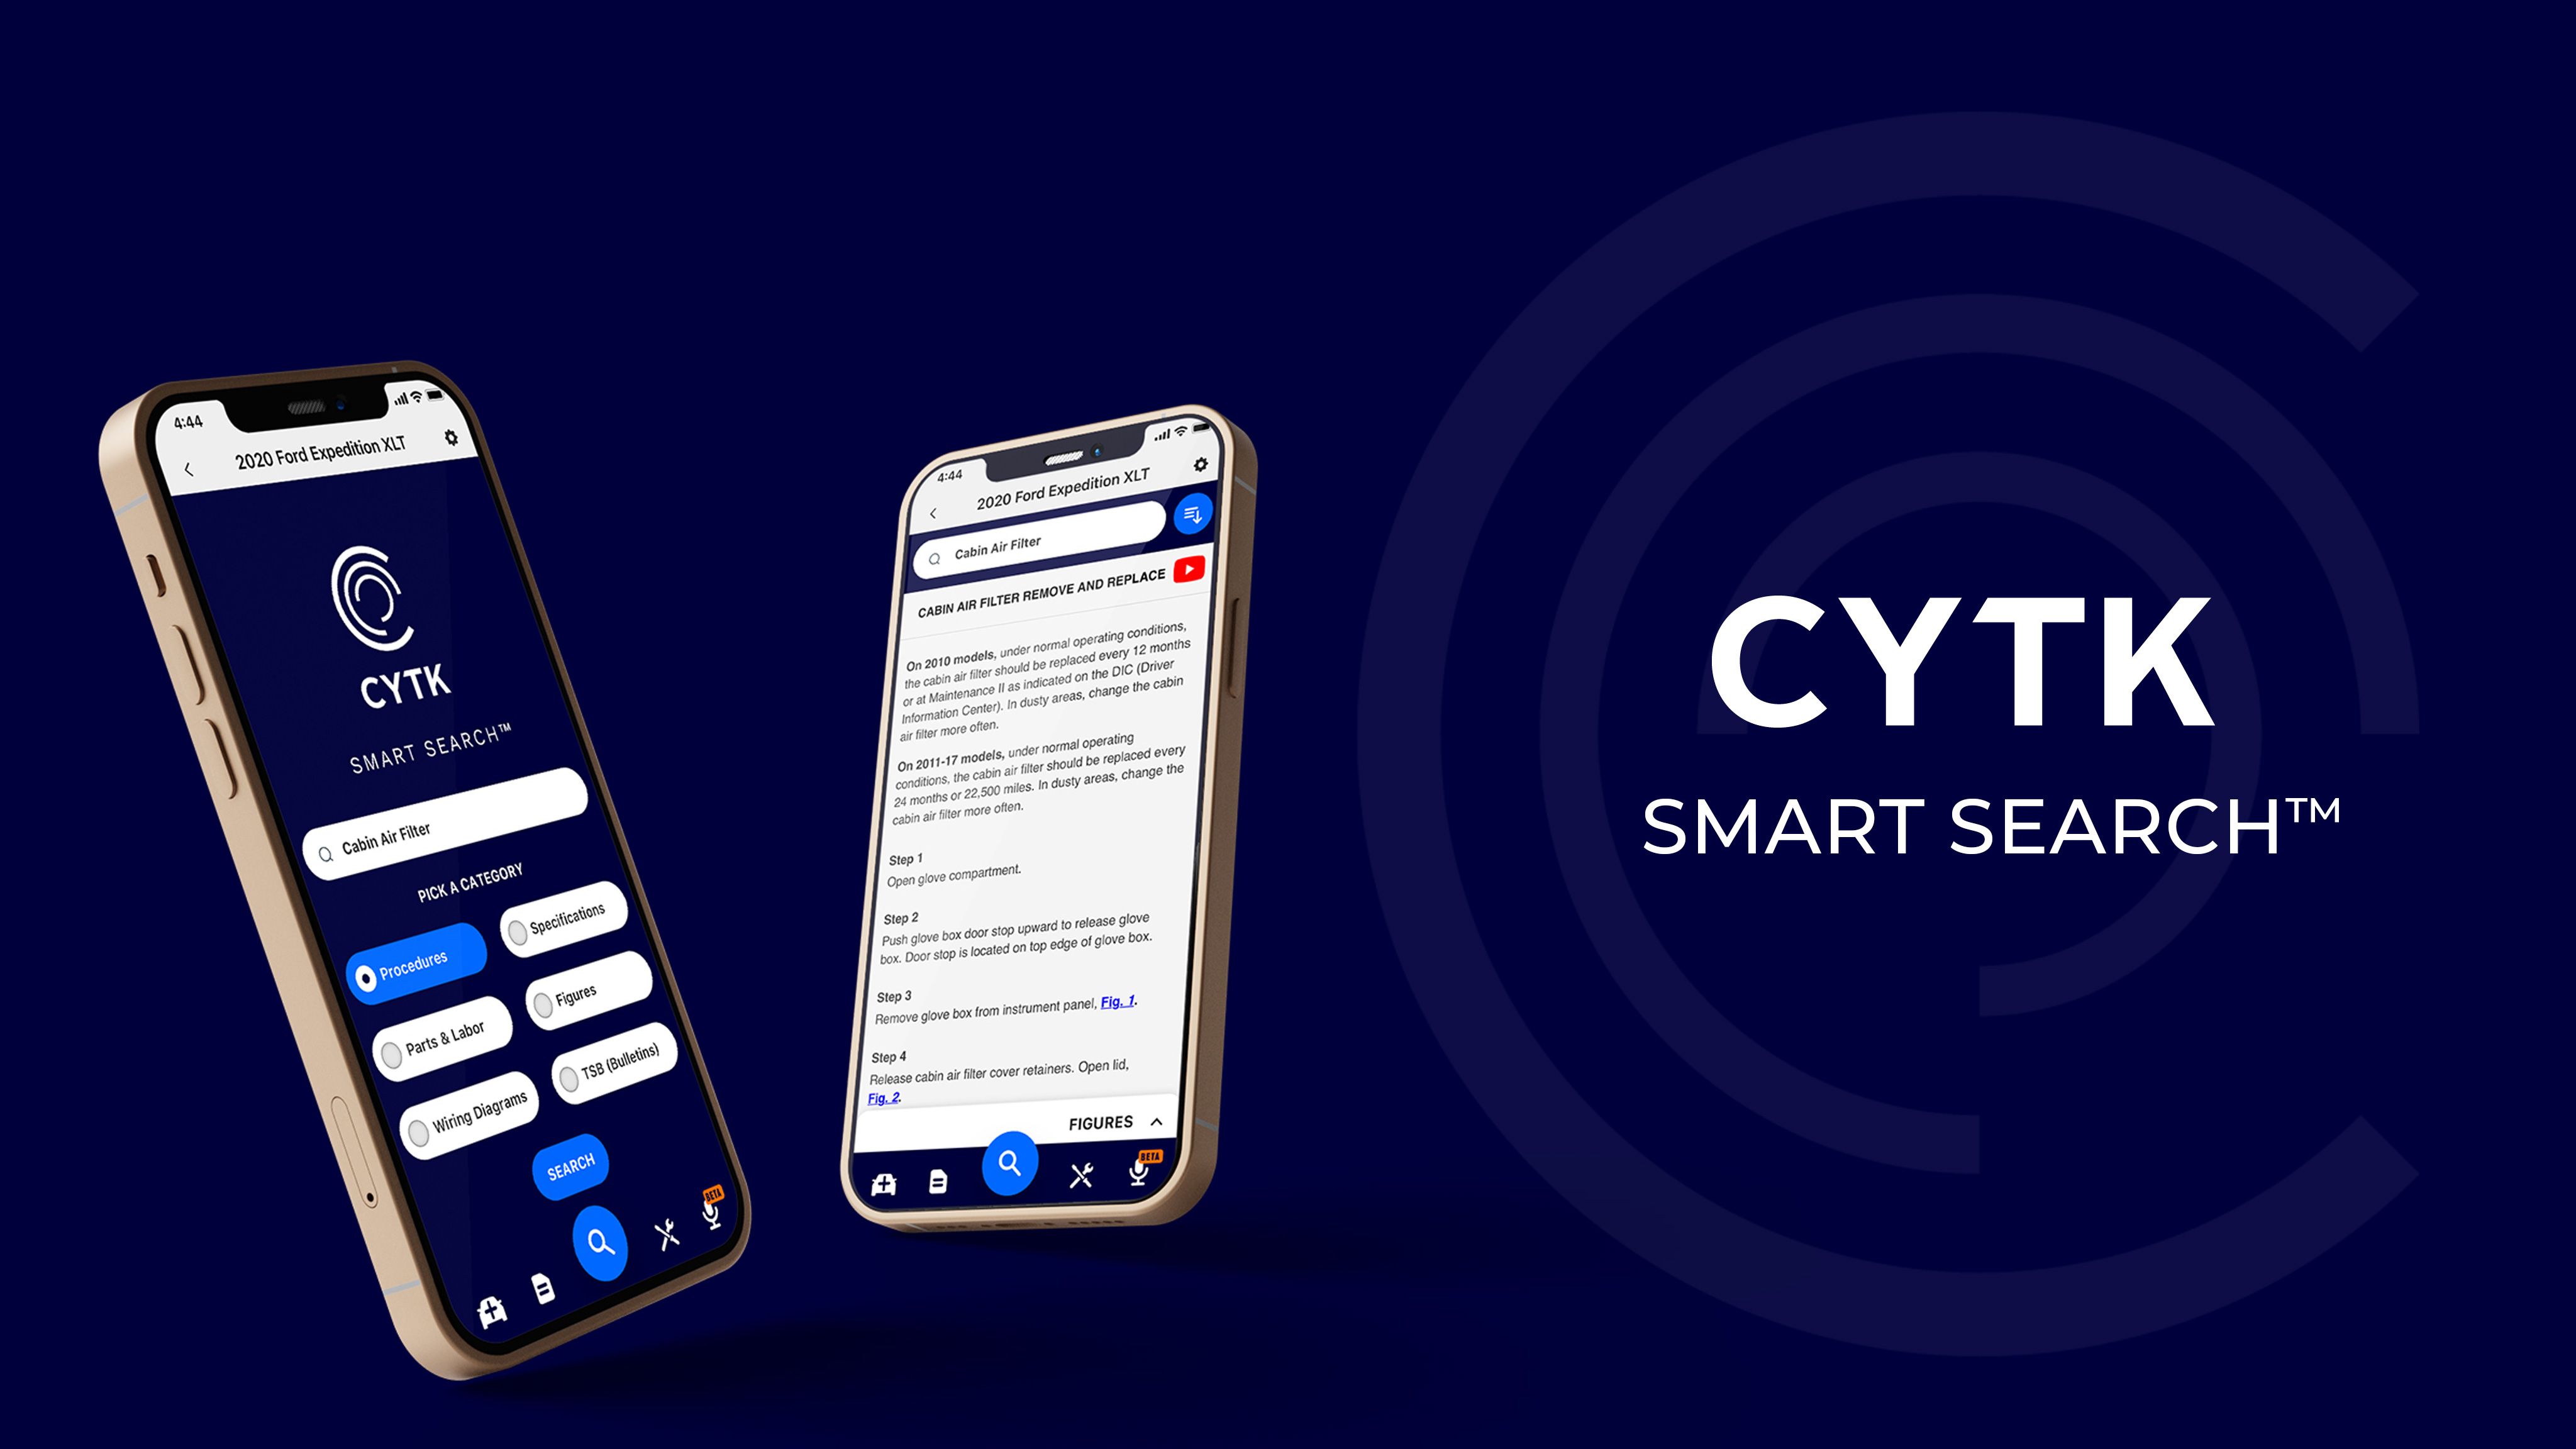 CYTK Smart Search™